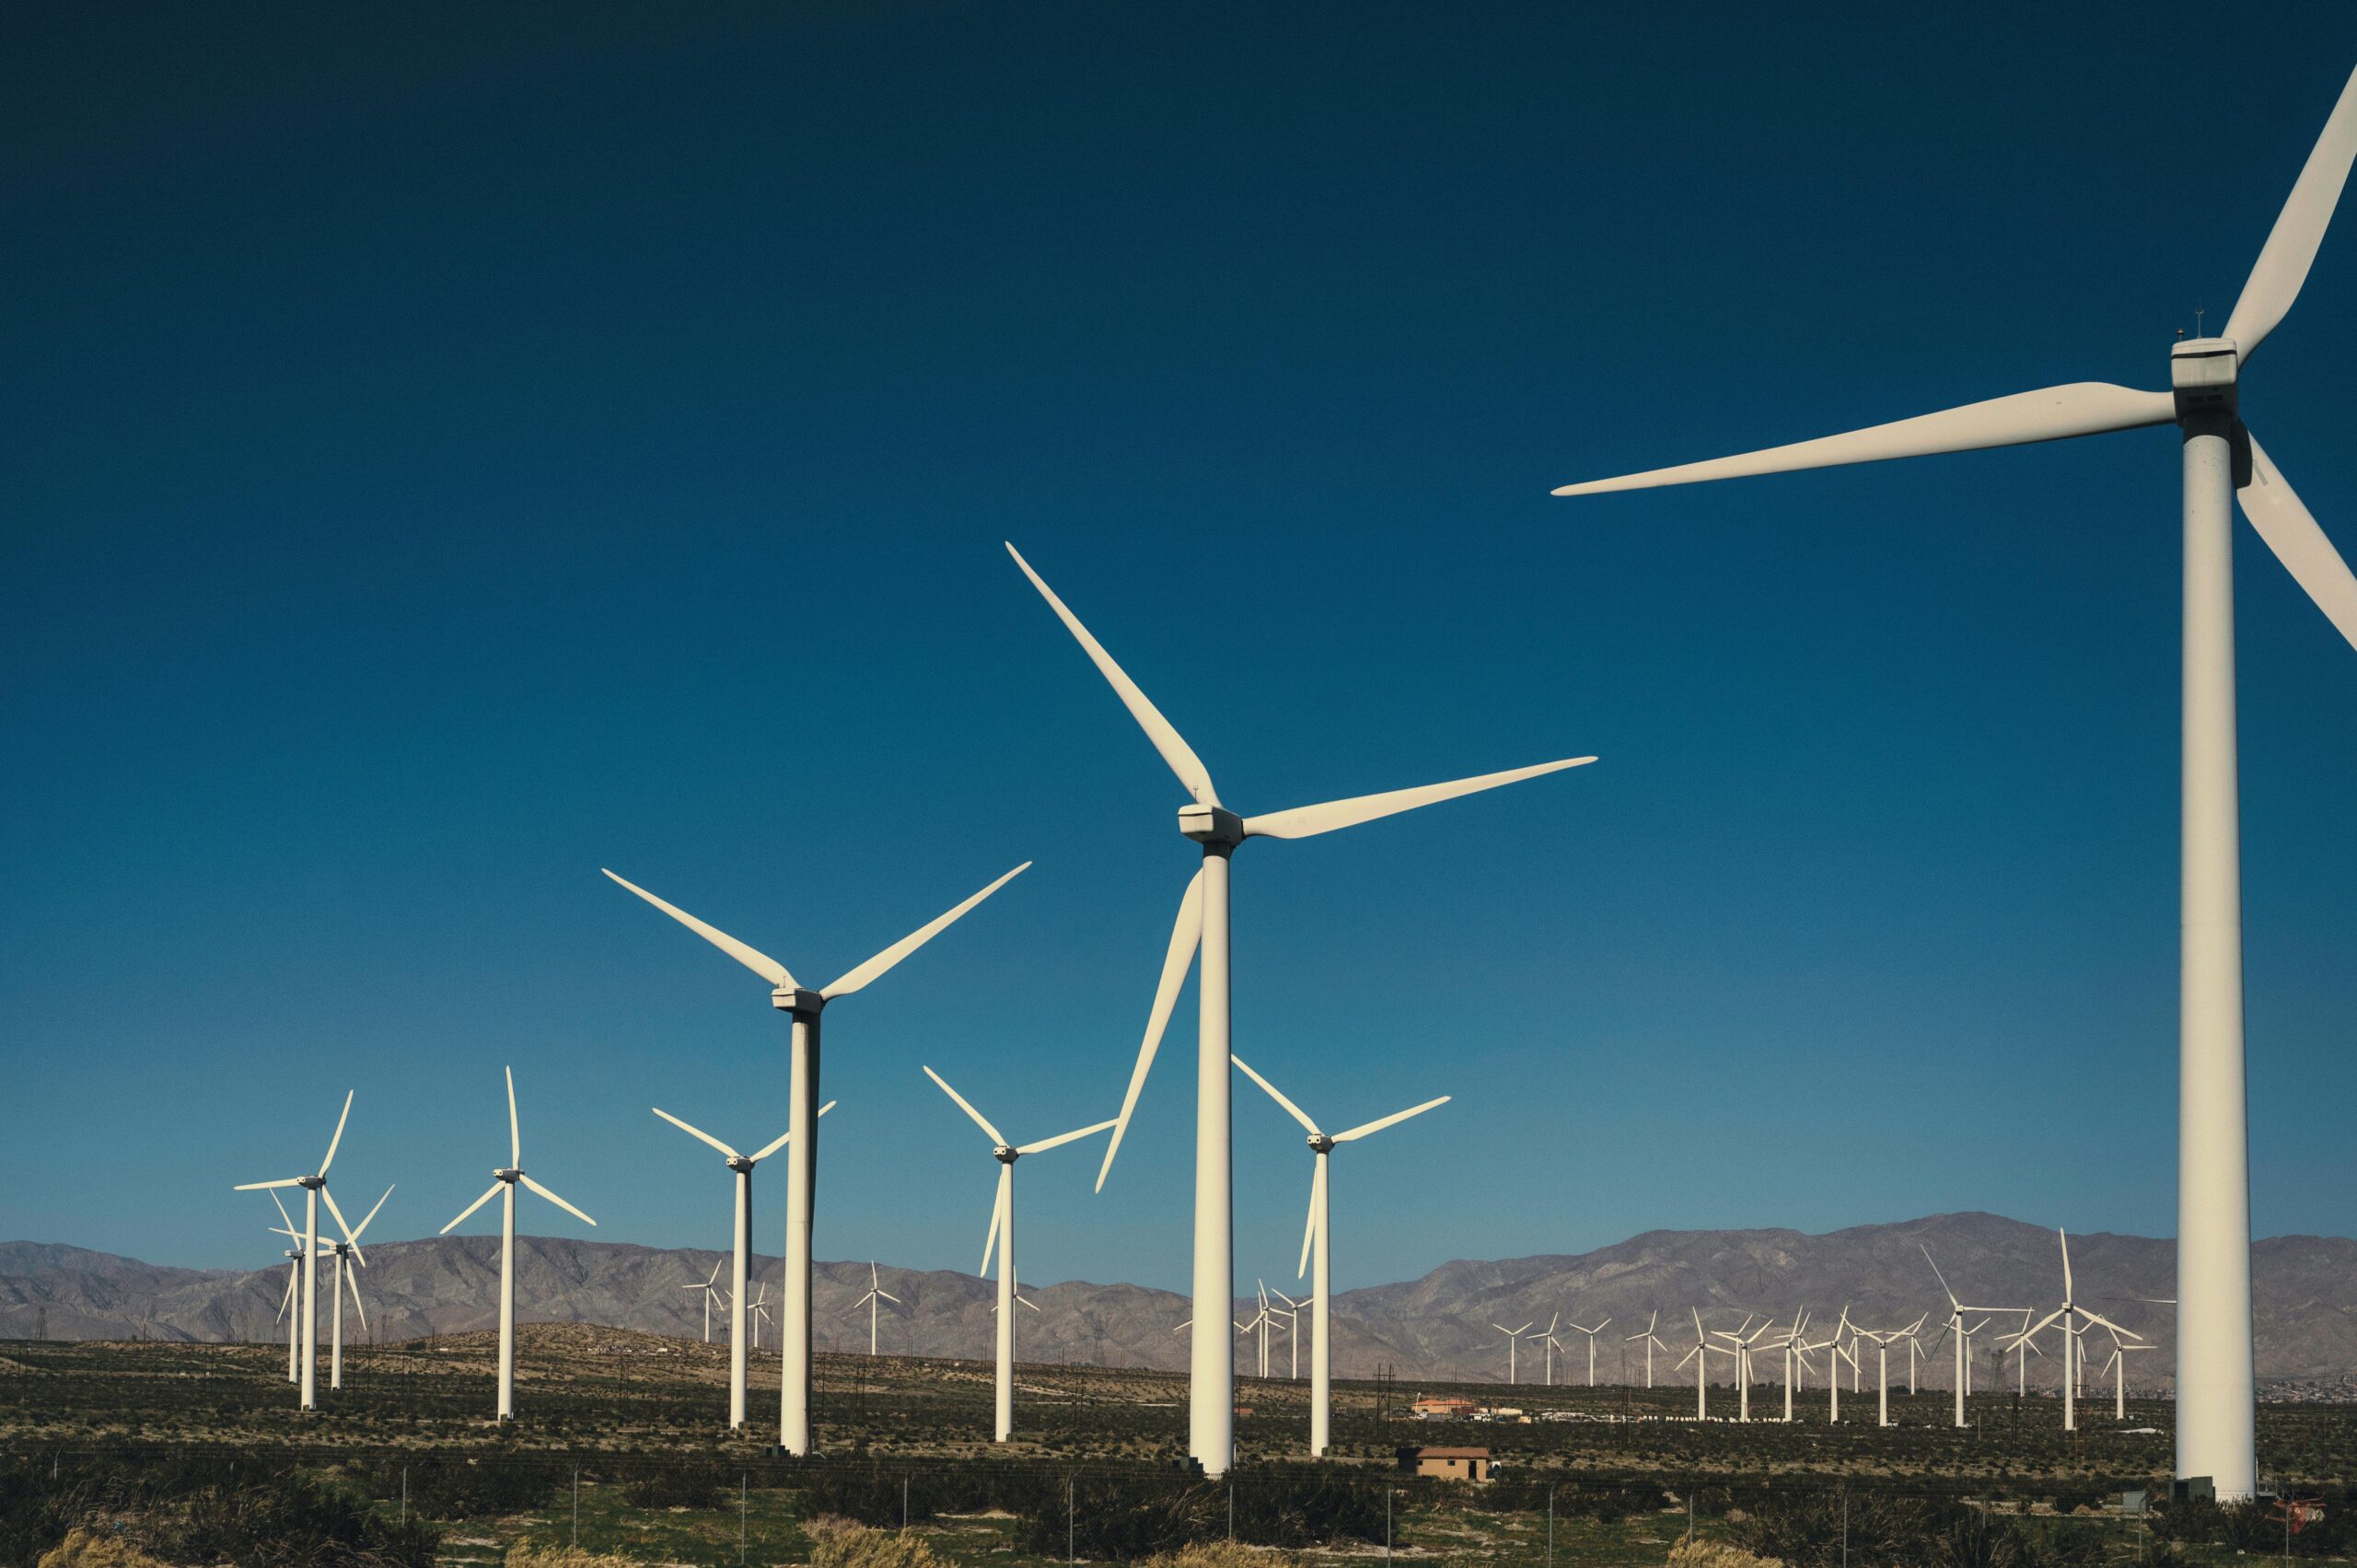 Ein Windpark mit mehreren Windkraftanlagen vor einem klaren blauen Himmel, der die Rolle der Digitalisierung bei der Bewältigung des Klimawandels verdeutlicht, mit Bergen im Hintergrund.